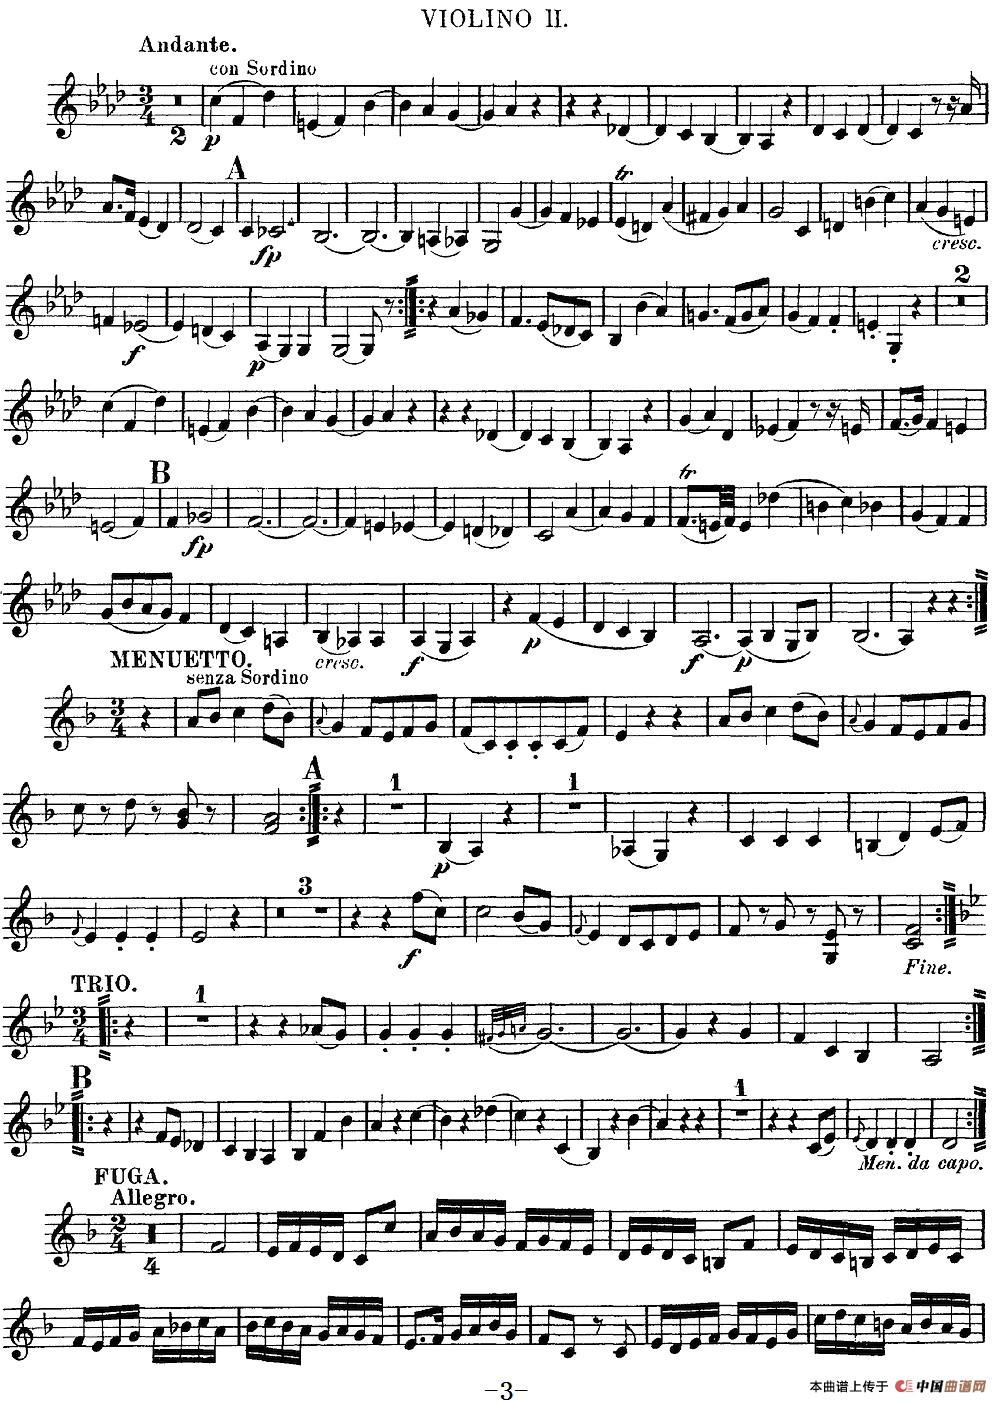 Mozart《Quartet No.8 in F Major,K.168》（Violin 2分谱）